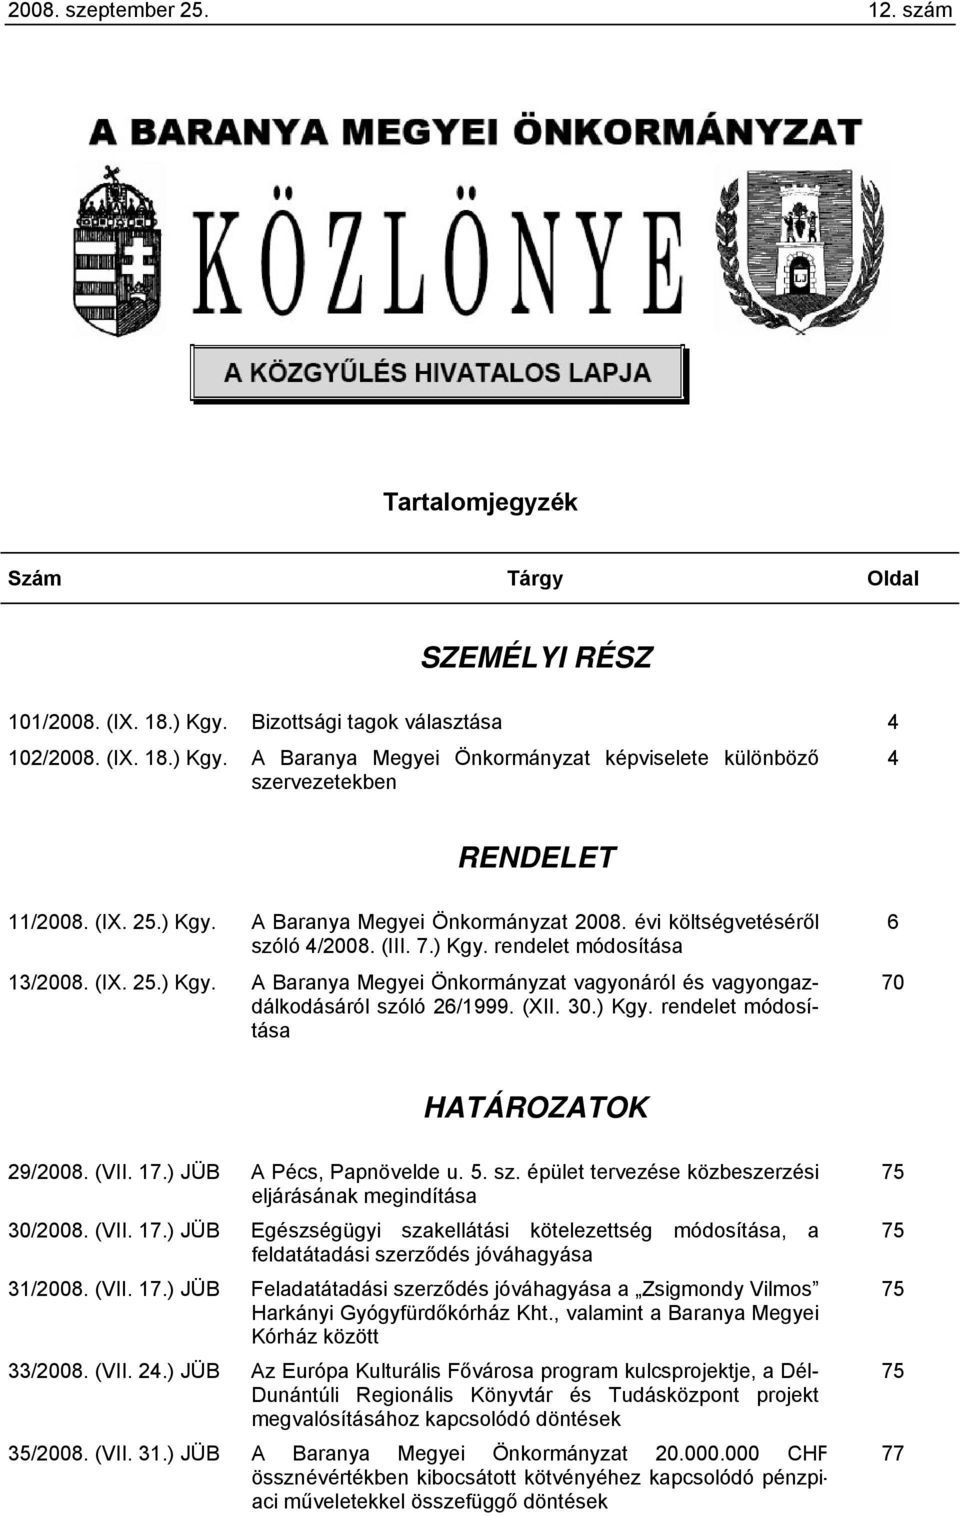 (XII. 30.) Kgy. rendelet módosítása 6 70 HATÁROZATOK 29/2008. (VII. 17.) JÜB A Pécs, Papnövelde u. 5. sz. épület tervezése közbeszerzési eljárásának megindítása 30/2008. (VII. 17.) JÜB Egészségügyi szakellátási kötelezettség módosítása, a feldatátadási szerződés jóváhagyása 31/2008.